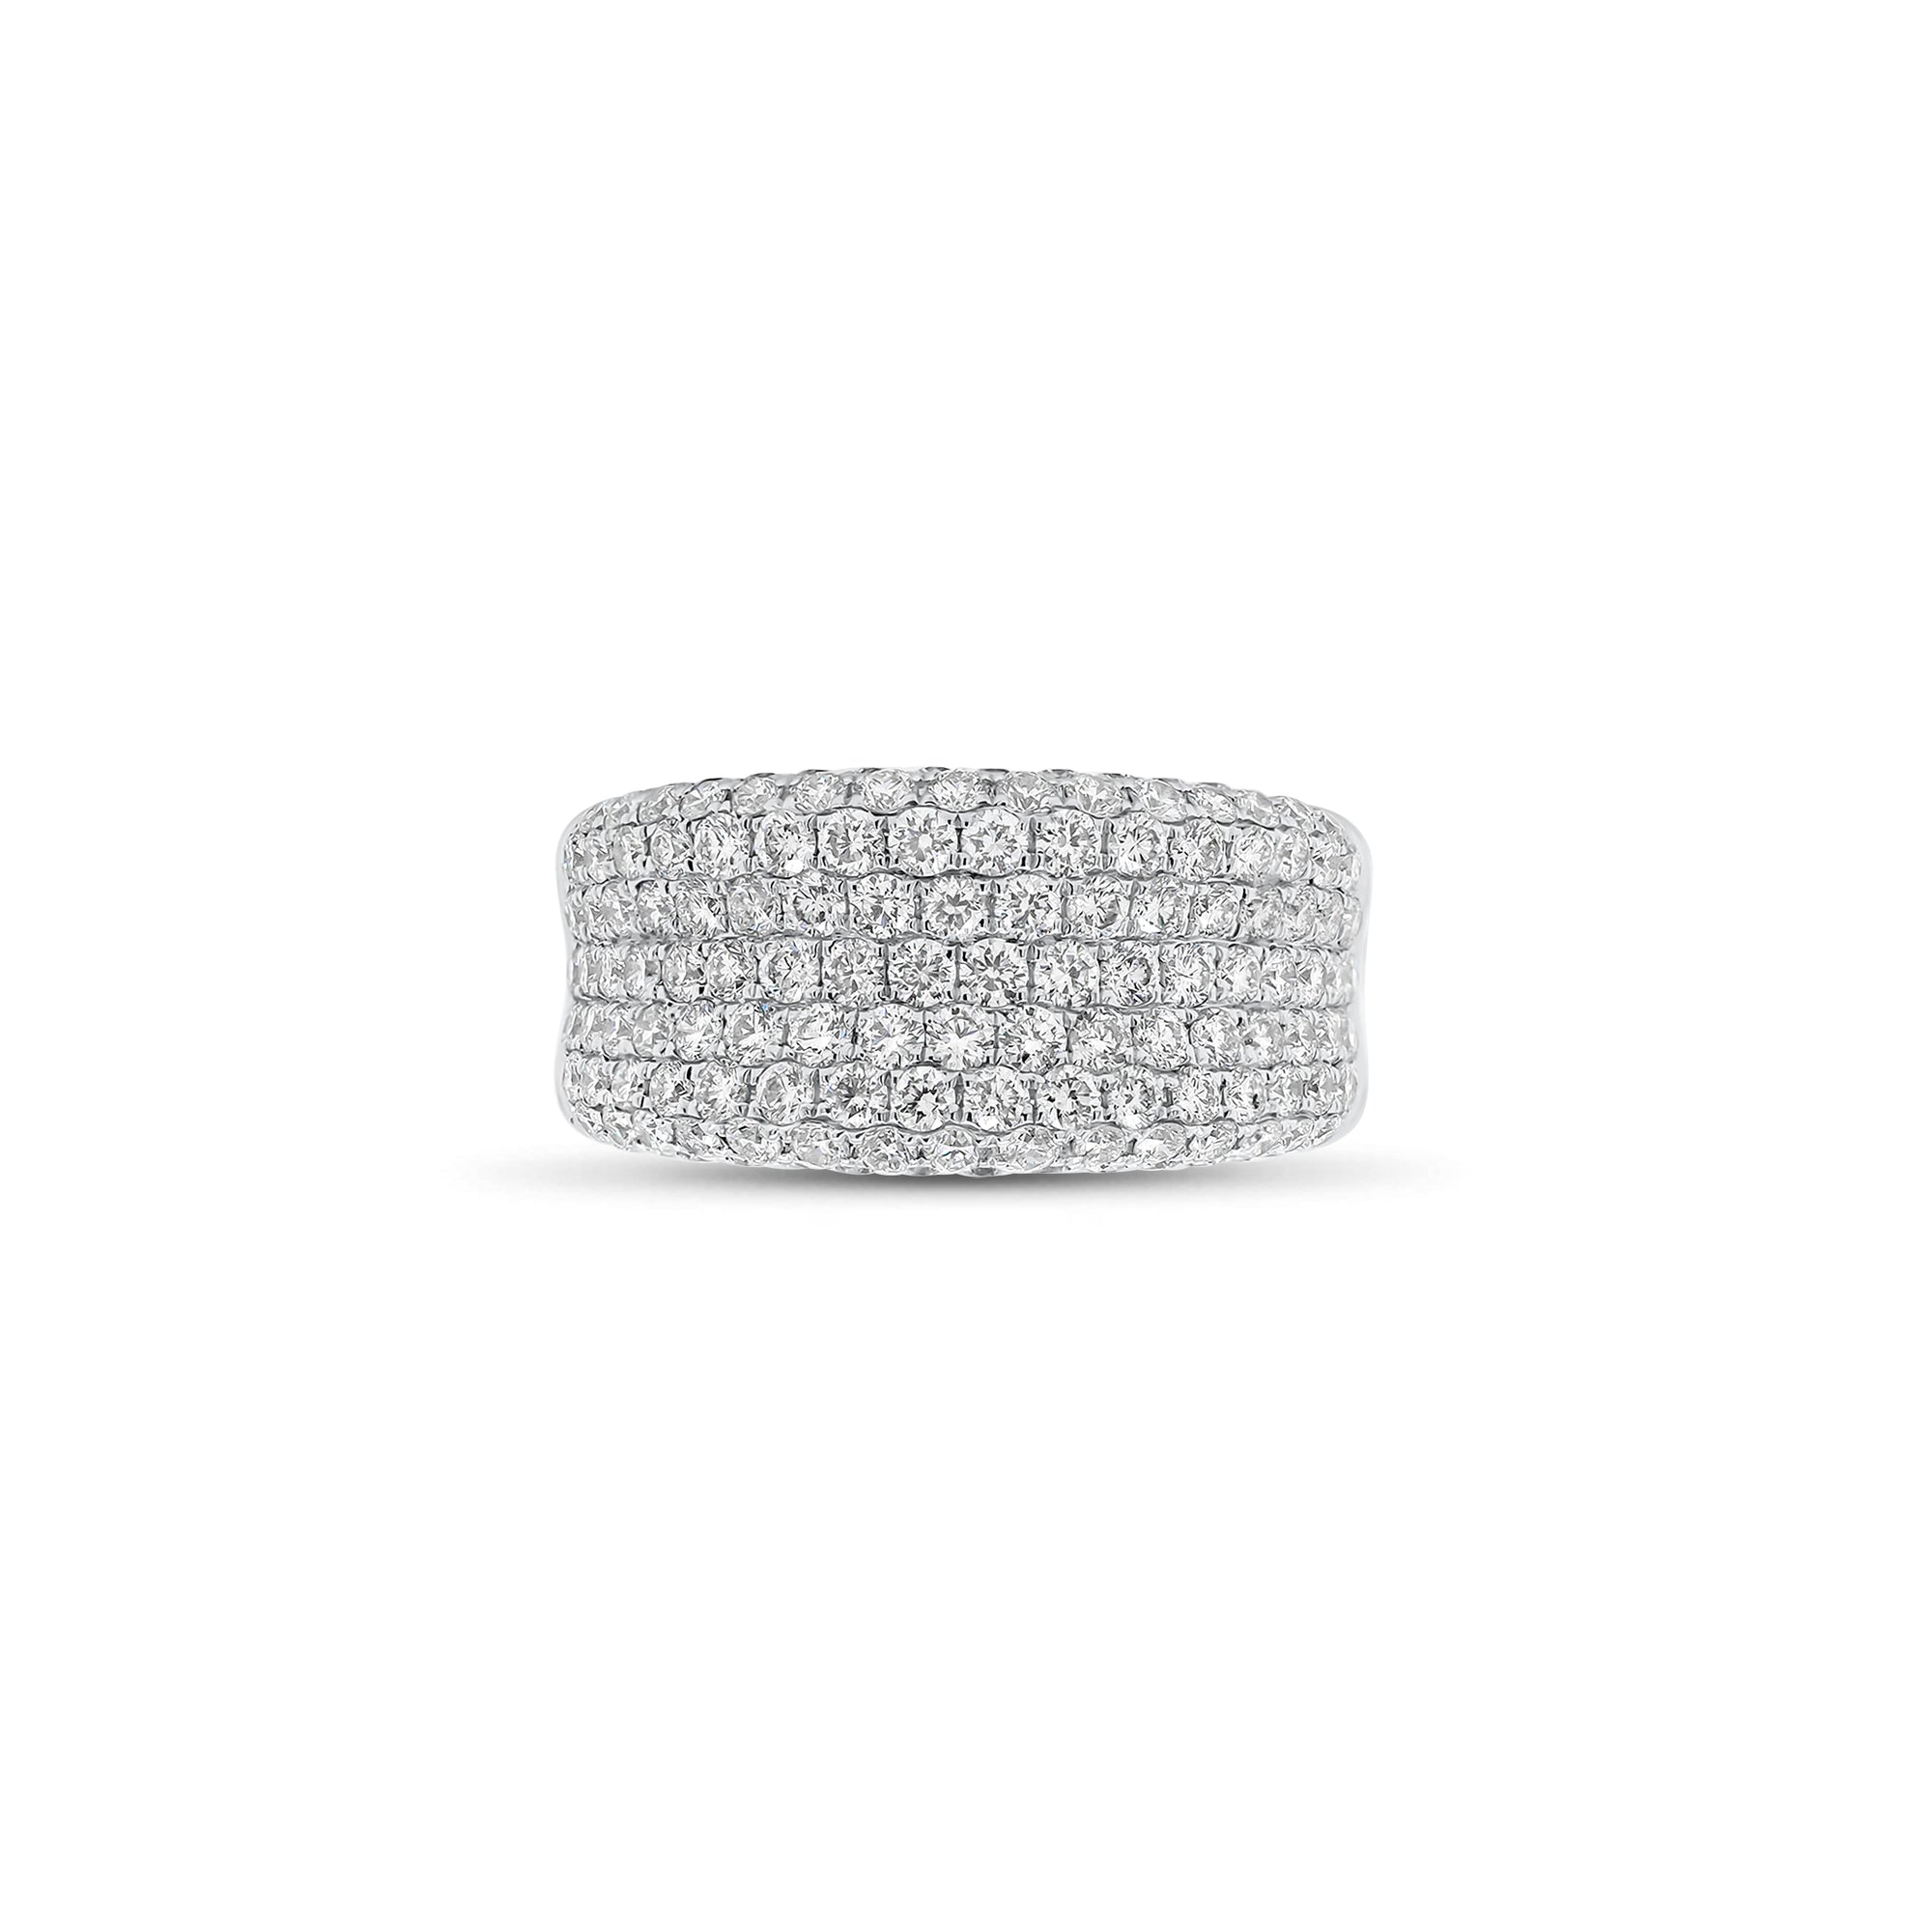 Pave Diamond Wedding Band - 18K gold weighing 8.60 grams  - 142 round diamonds weighing 1.86 carats